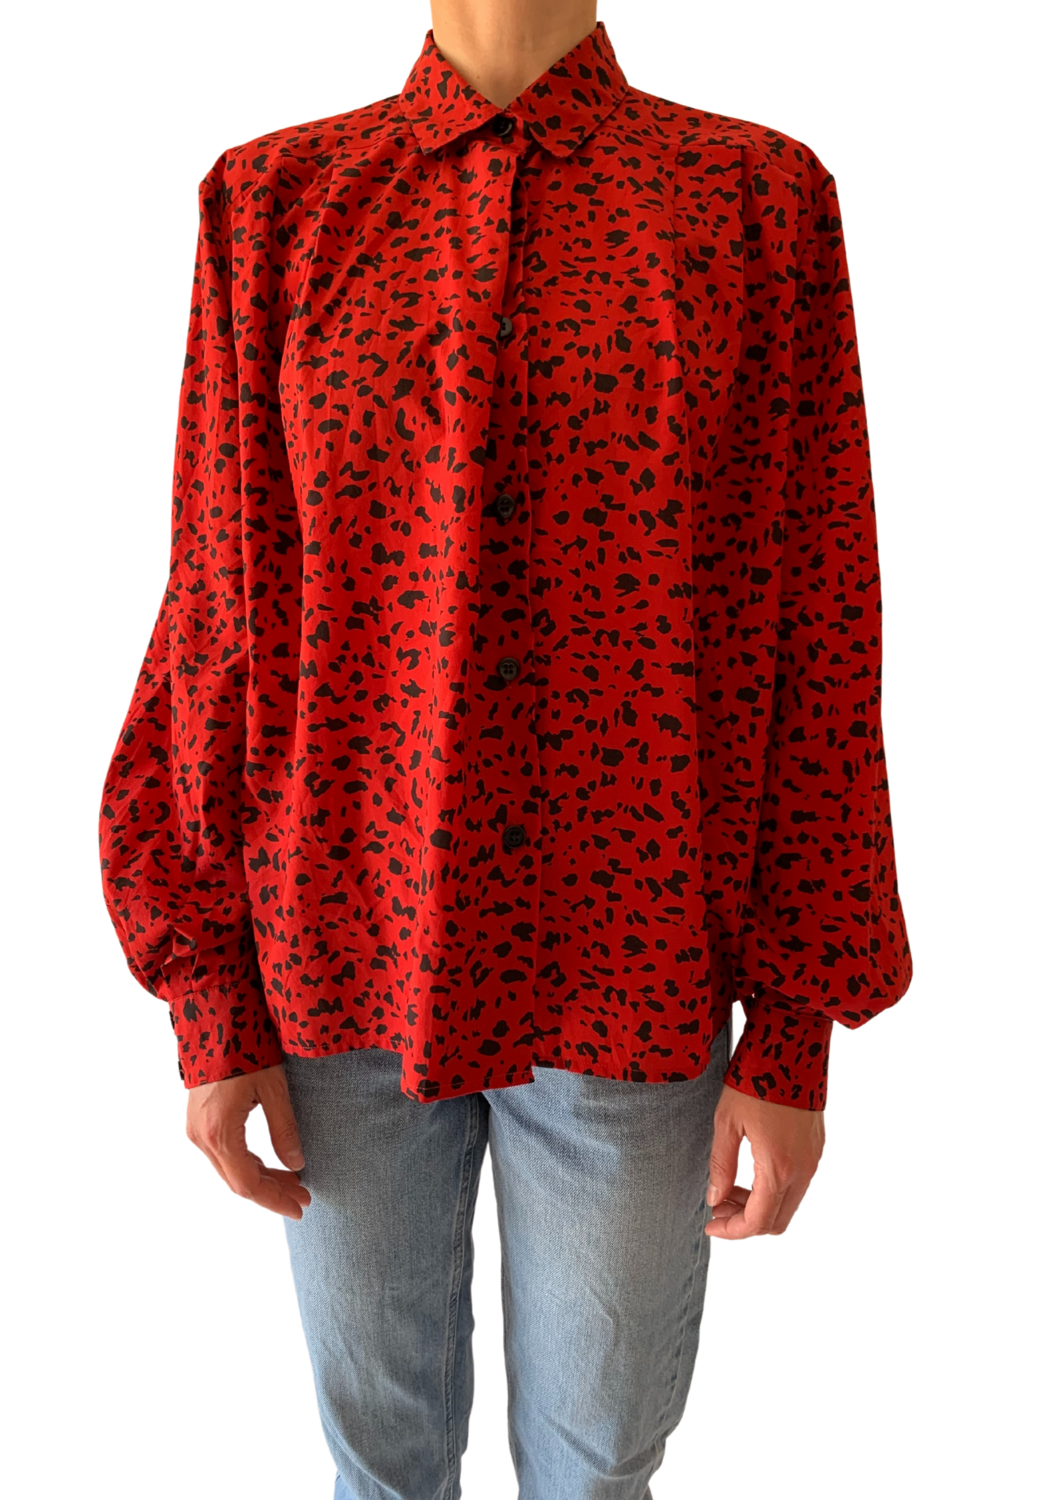 Leopard crvena košulja